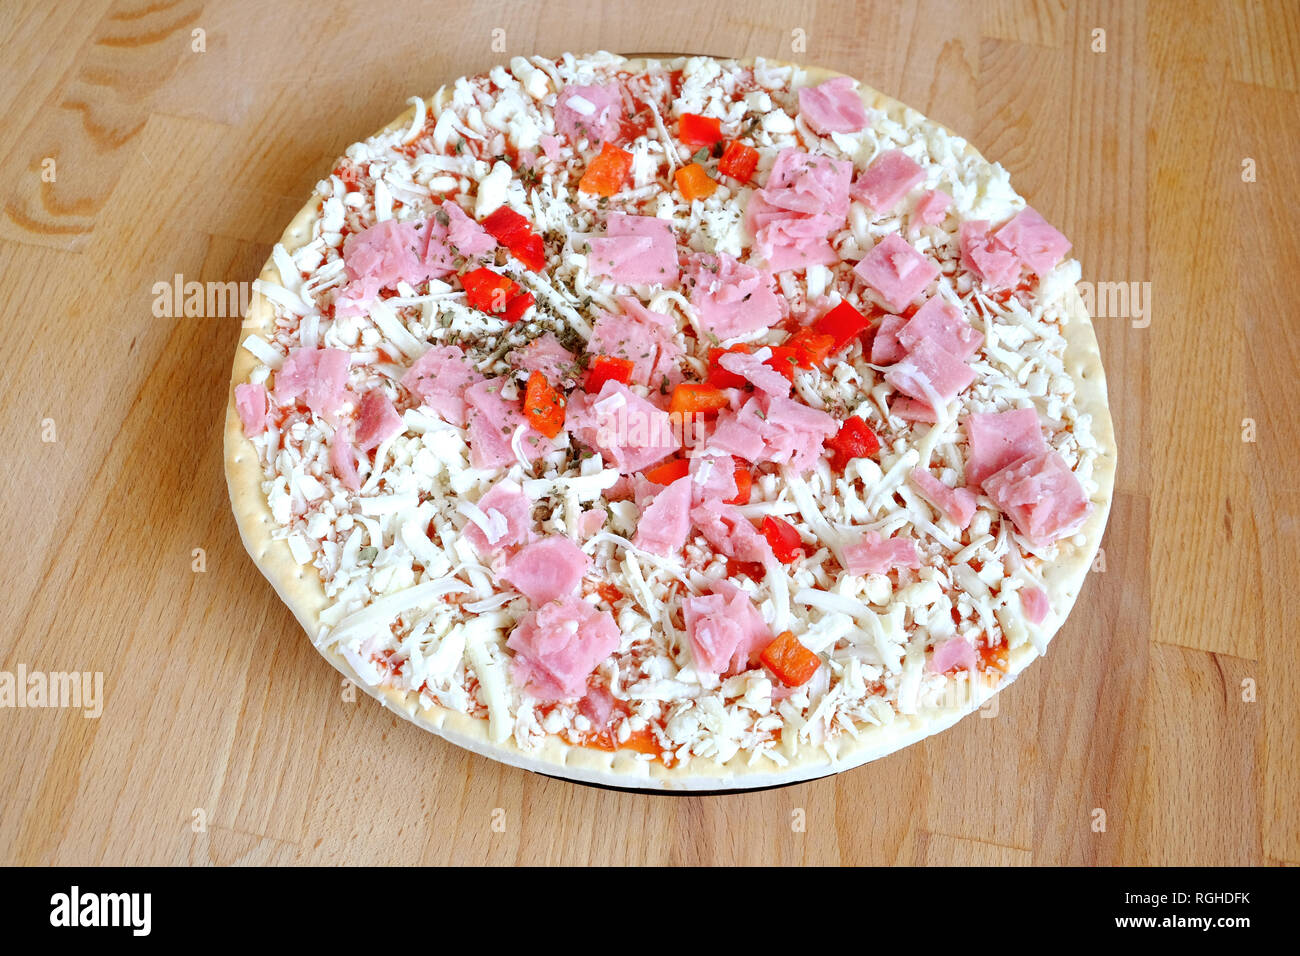 Materie (nella quasi totalità) impreparati pizza sul marrone sabbia cucina in legno table top view closeup Foto Stock